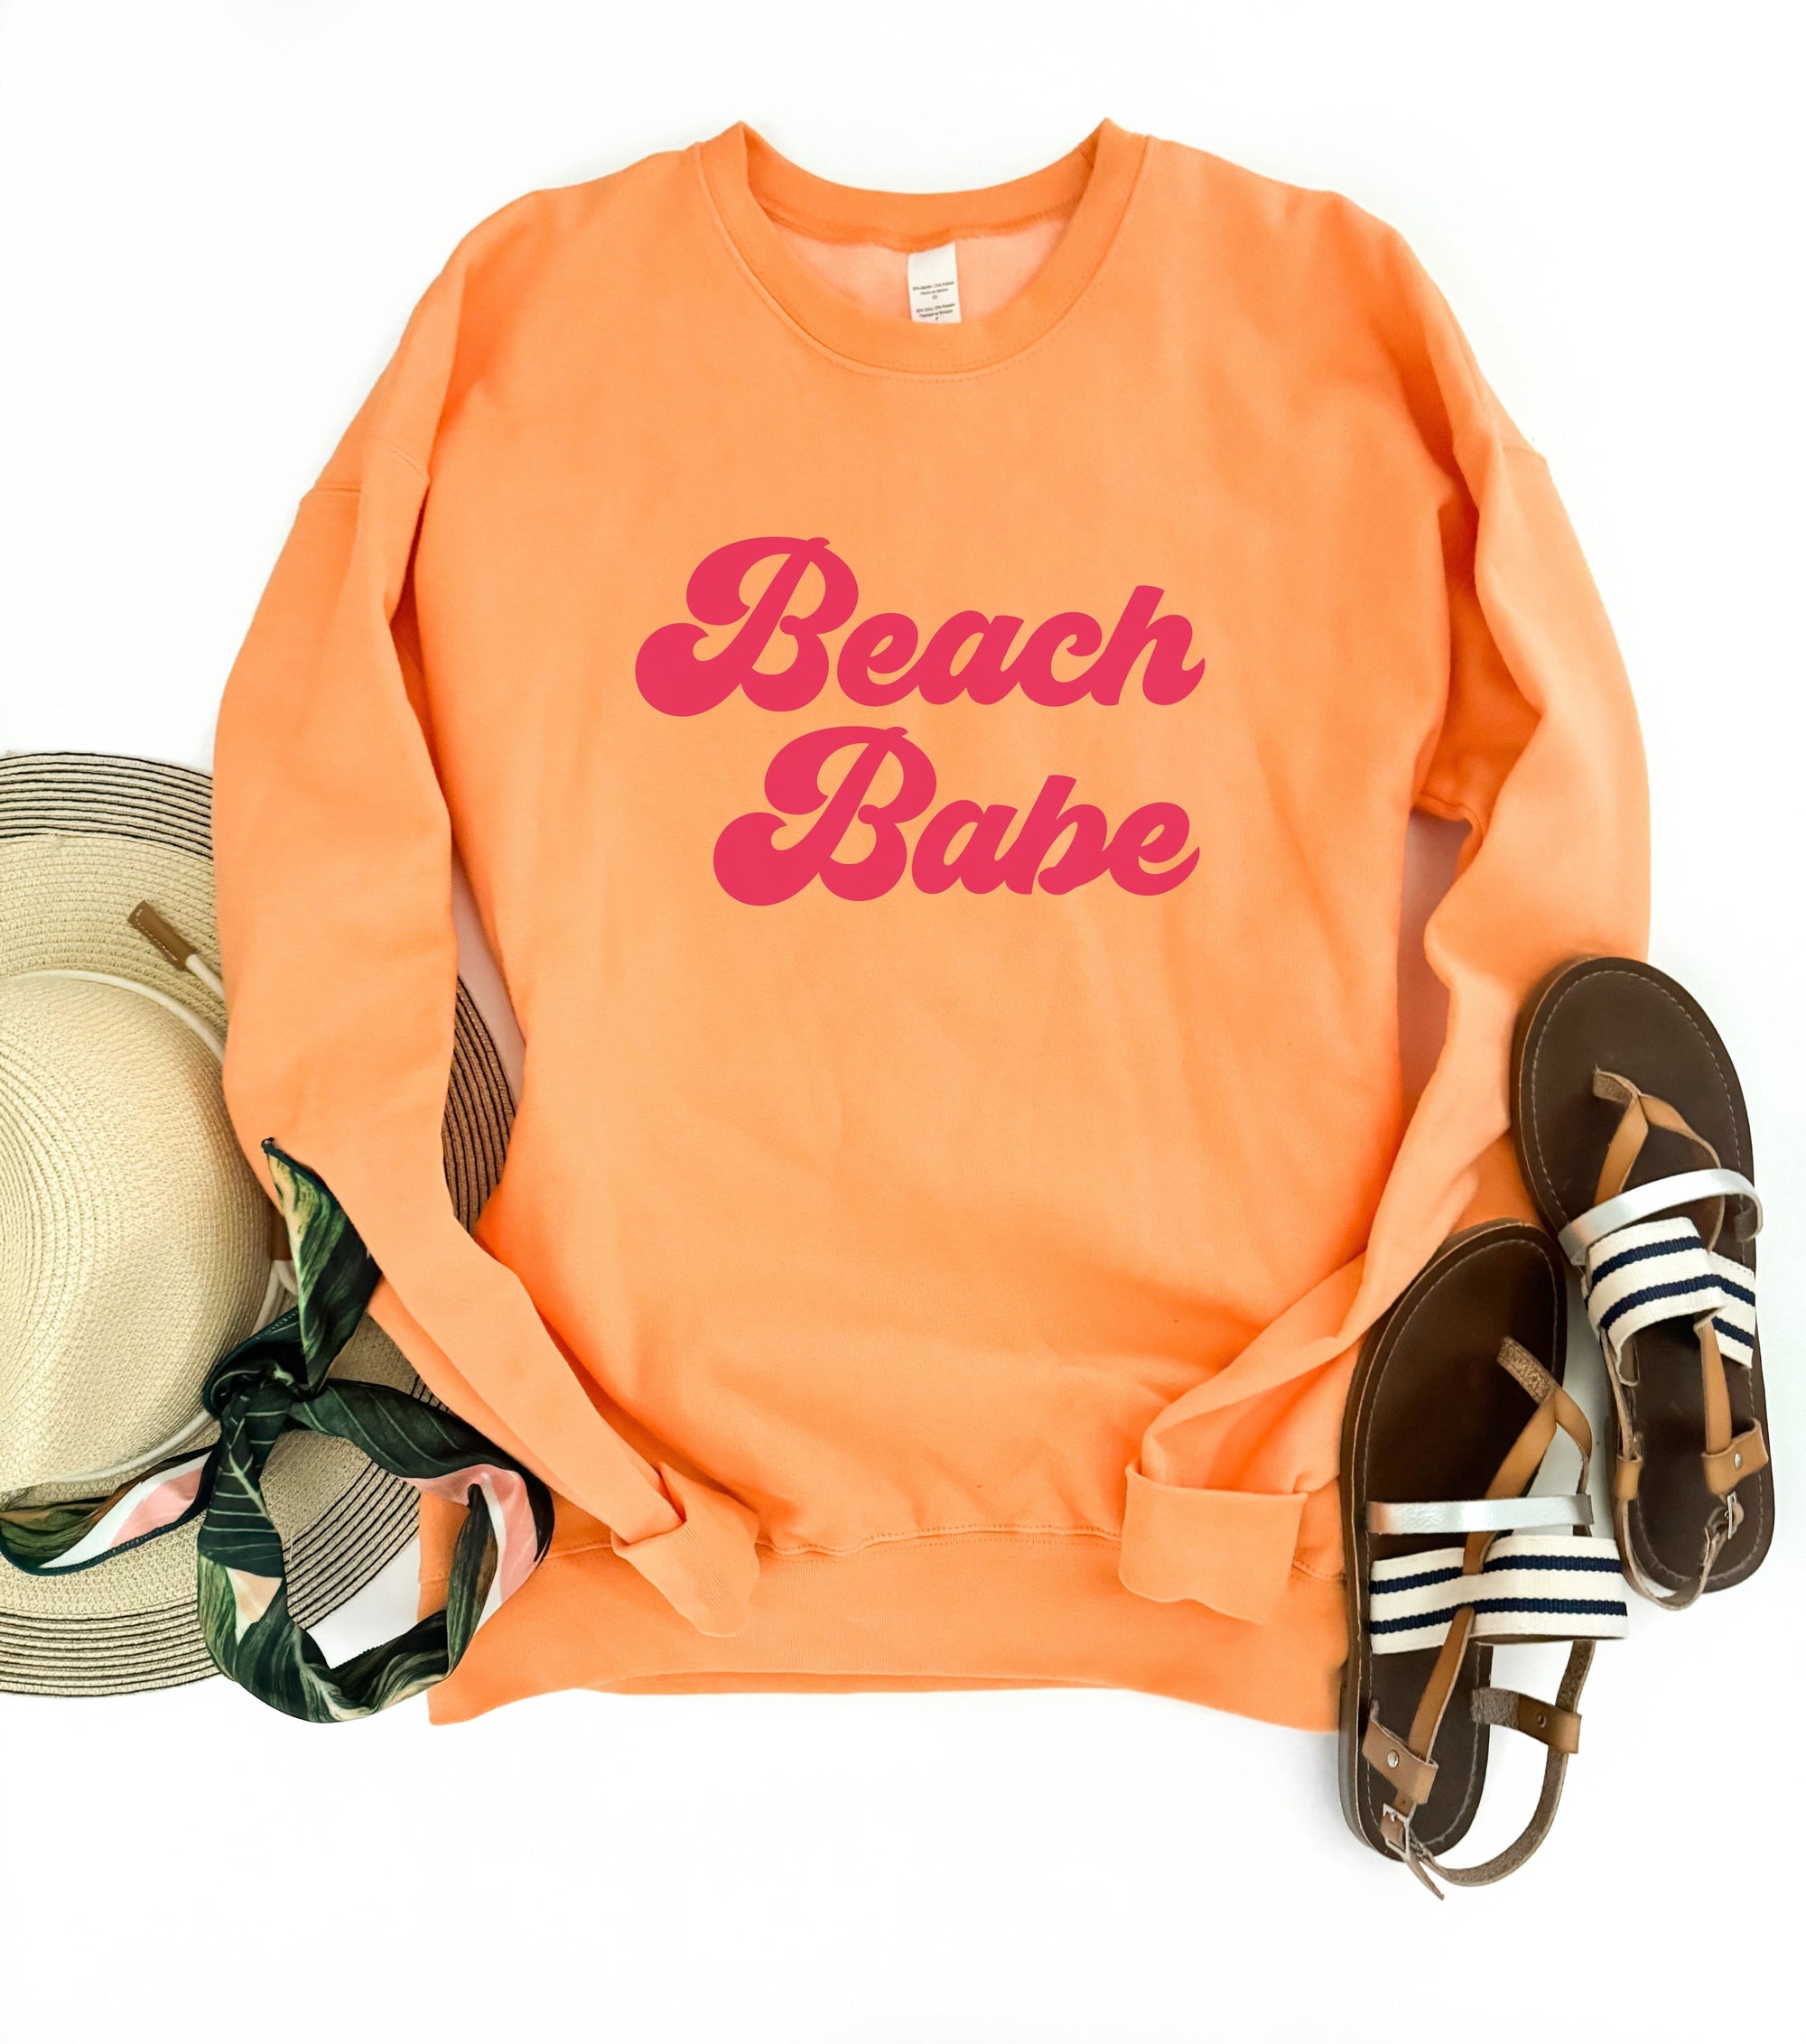 Beach babe fleece sweatshirt Vacay mode sweatshirt Tultex fleece 340 Cantaloupe 